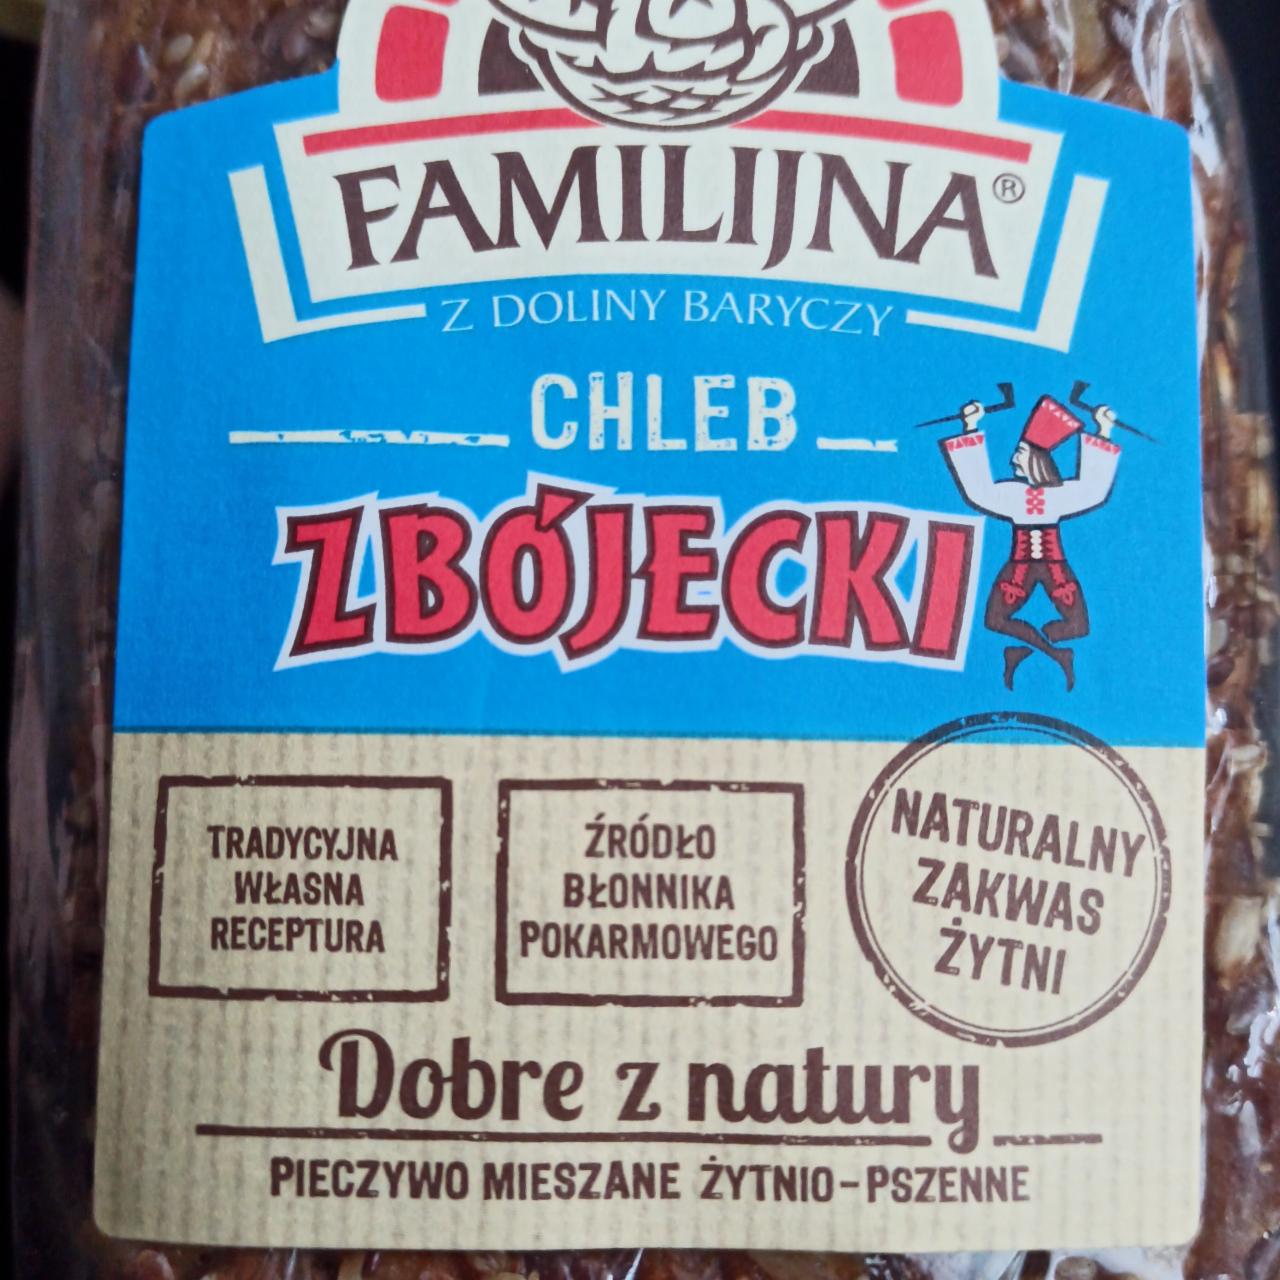 Фото - Хлеб ржано-пшеничный Chléb Zbojeckie Familijna